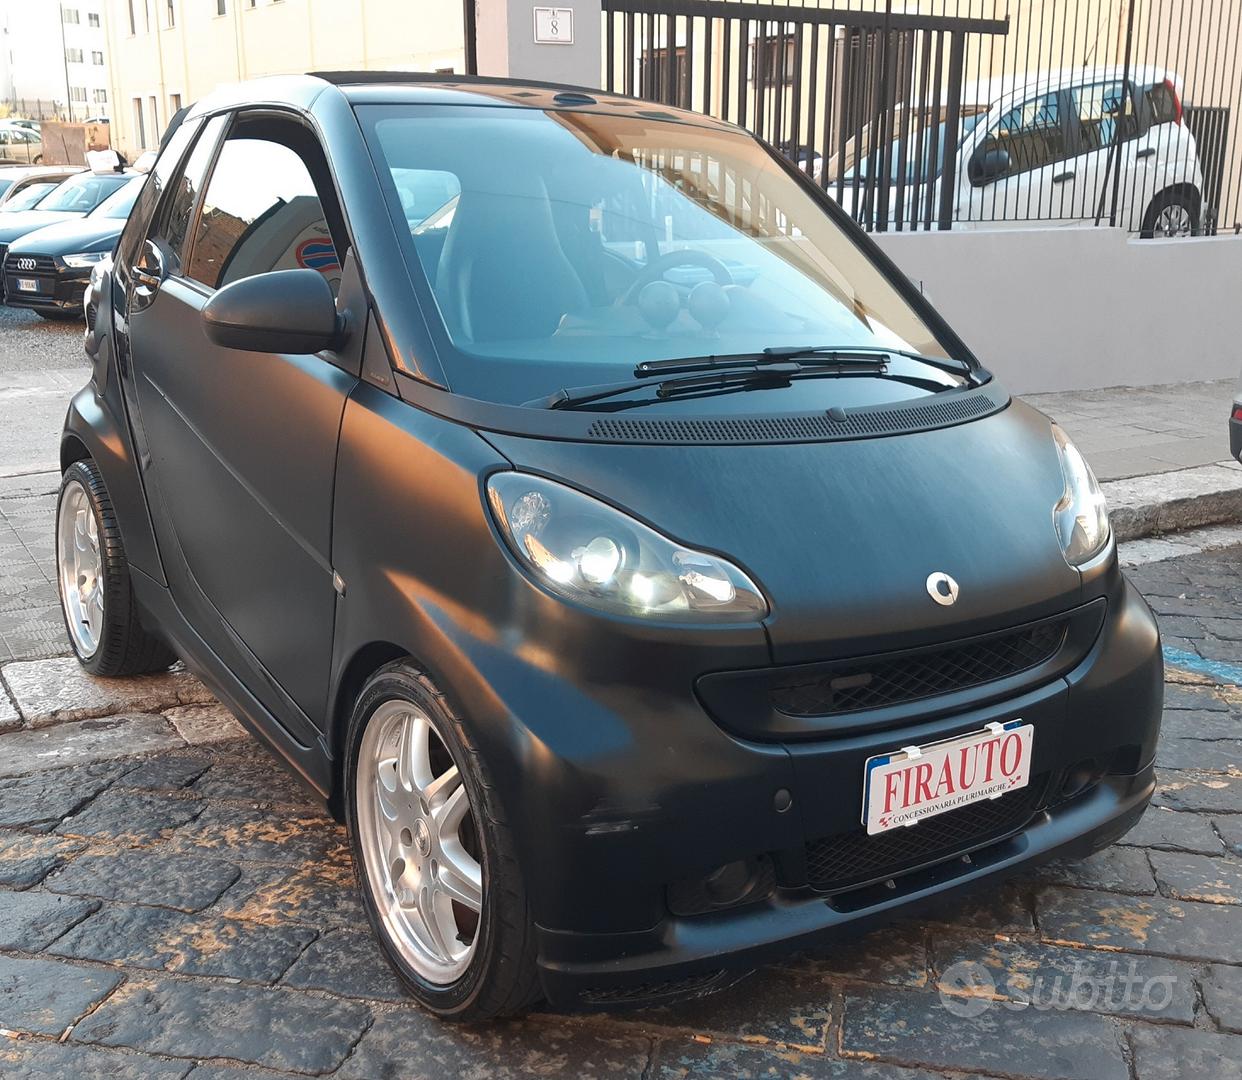 Subito - FIRAUTO SRL - Smart ForTwo 1000 75 kW cabrio BRABUS Xclusive -  Auto In vendita a Reggio Calabria